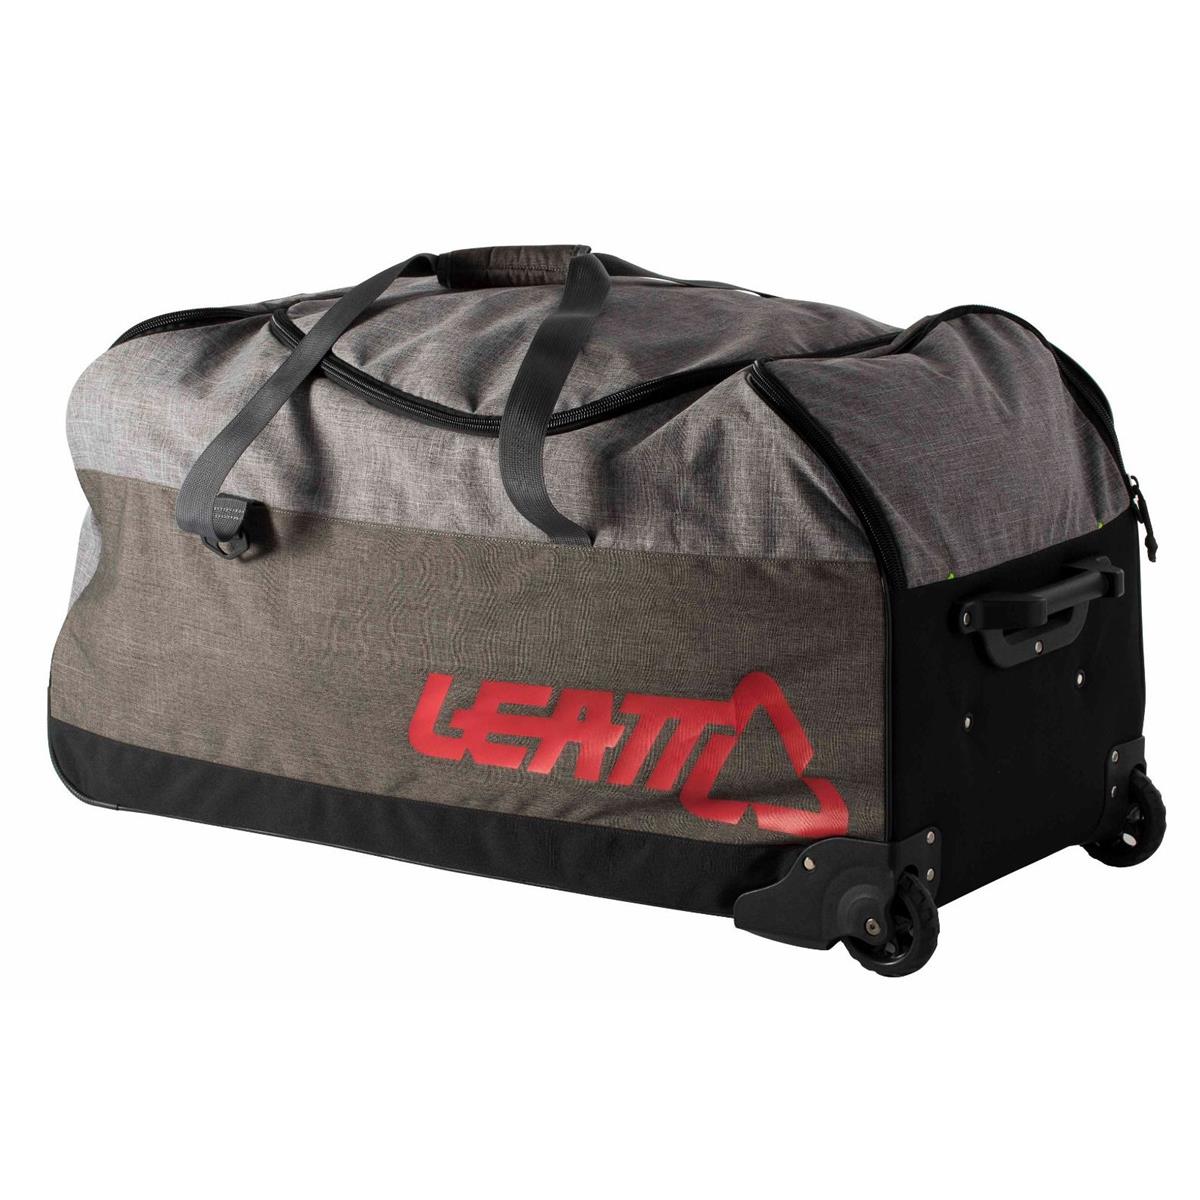 Leatt Travel Bag Roller 145 Litres